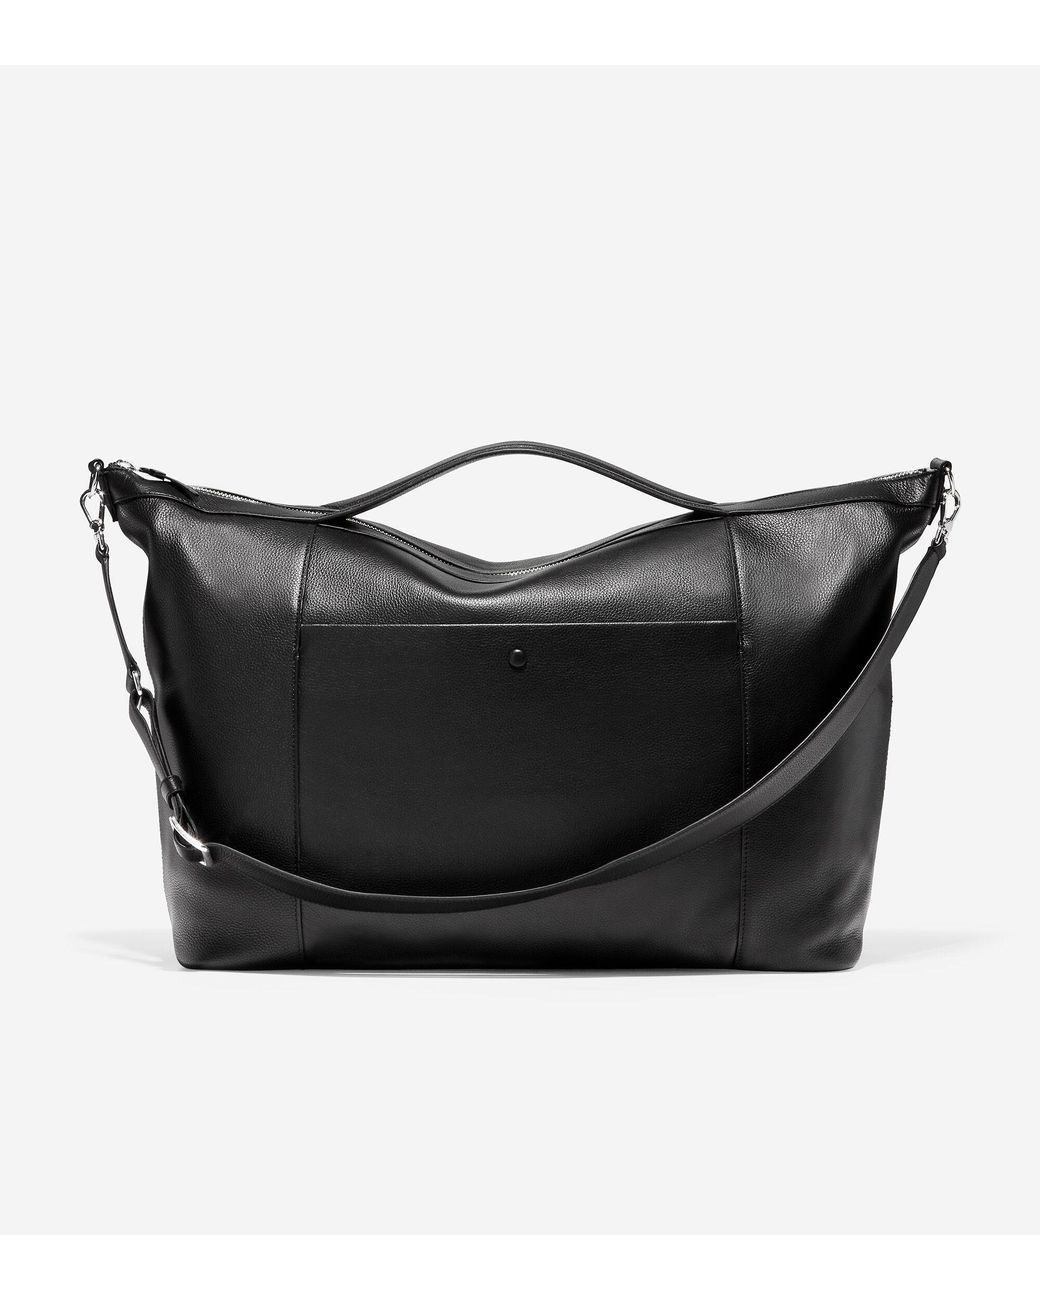 Beautiful Cole Haan purse 👜 black | Cole haan purses, Purses, Cole haan